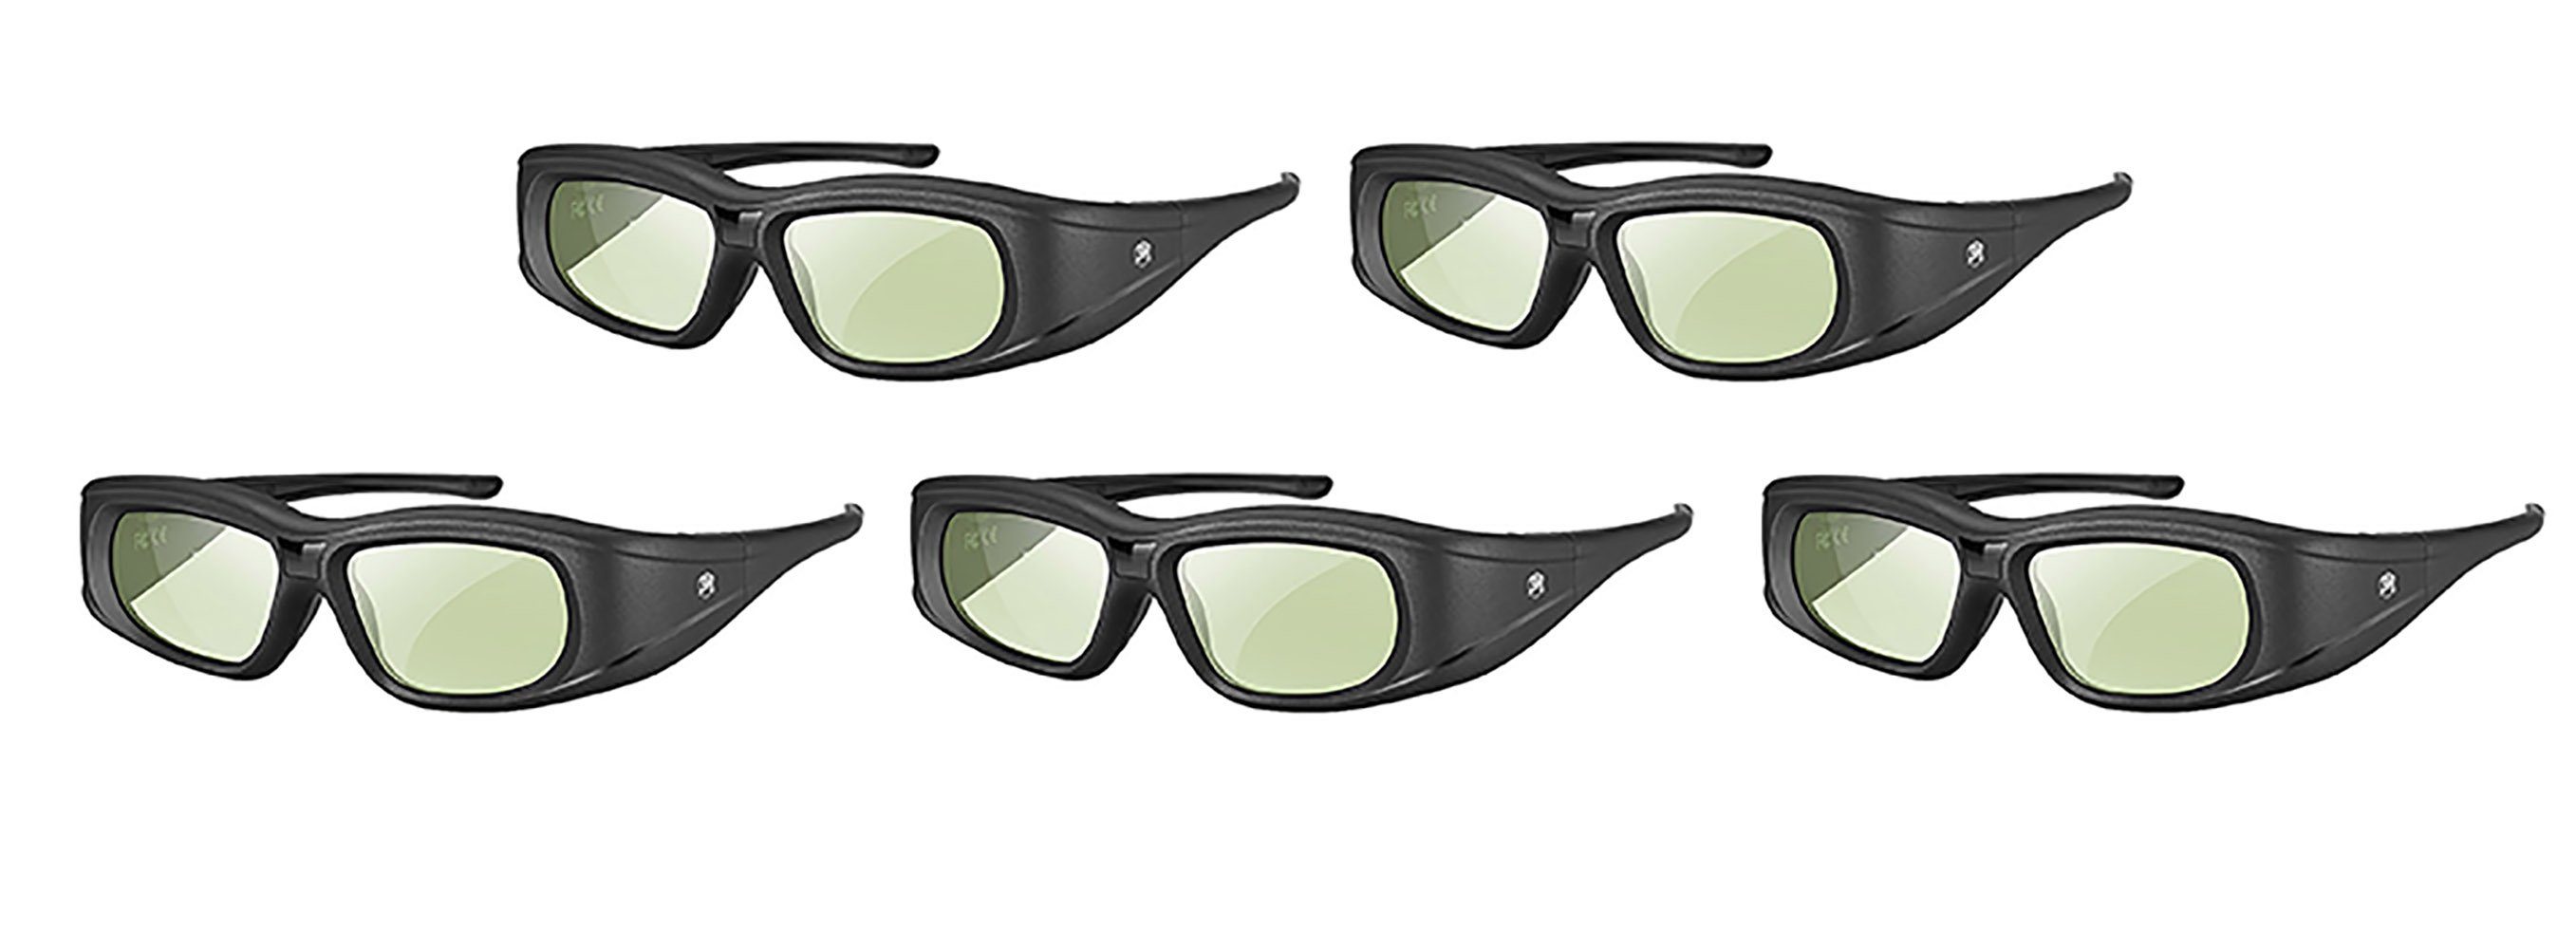 TPFNet 3D-Brille Aktive Shutterbrille für Bluetooth / RF 3D TVs, Samsung,  Panasonic, Epson, etc. - wiederaufladbar - Schwarz - 5 Stück